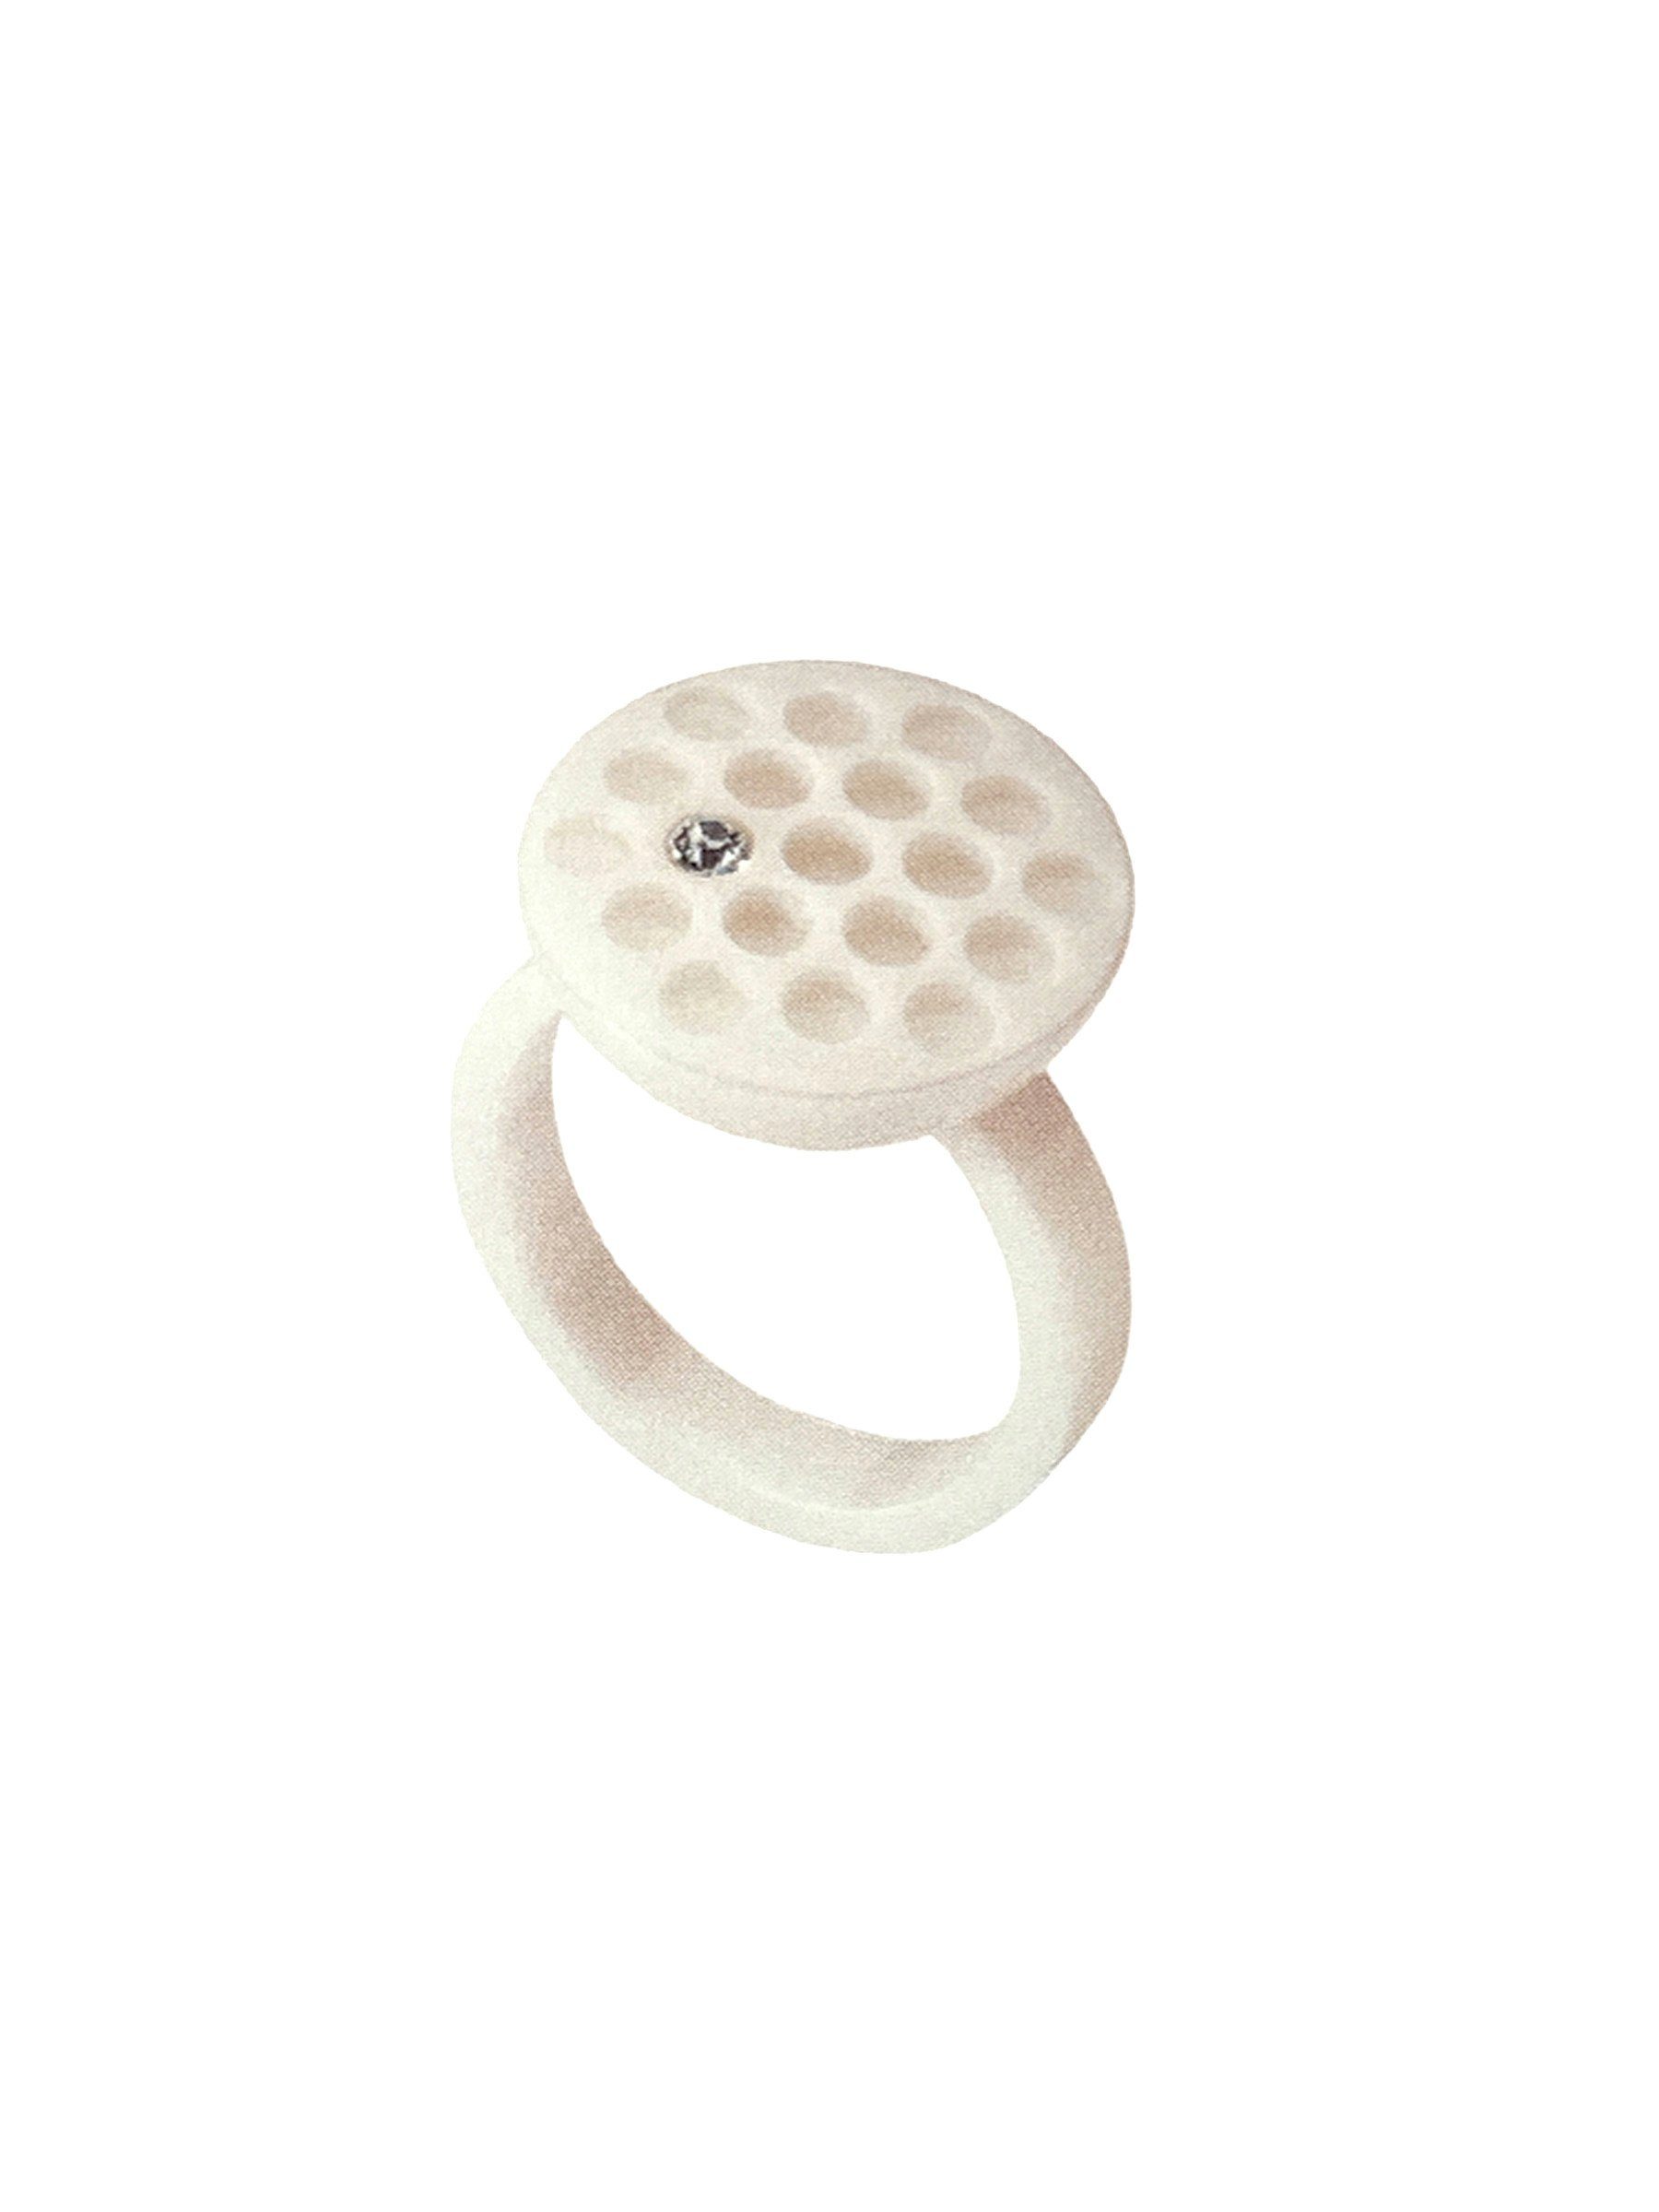 Swatch Bijoux Fingerring Edelstahl und JRW016-7, weißer Ring Keramik aus